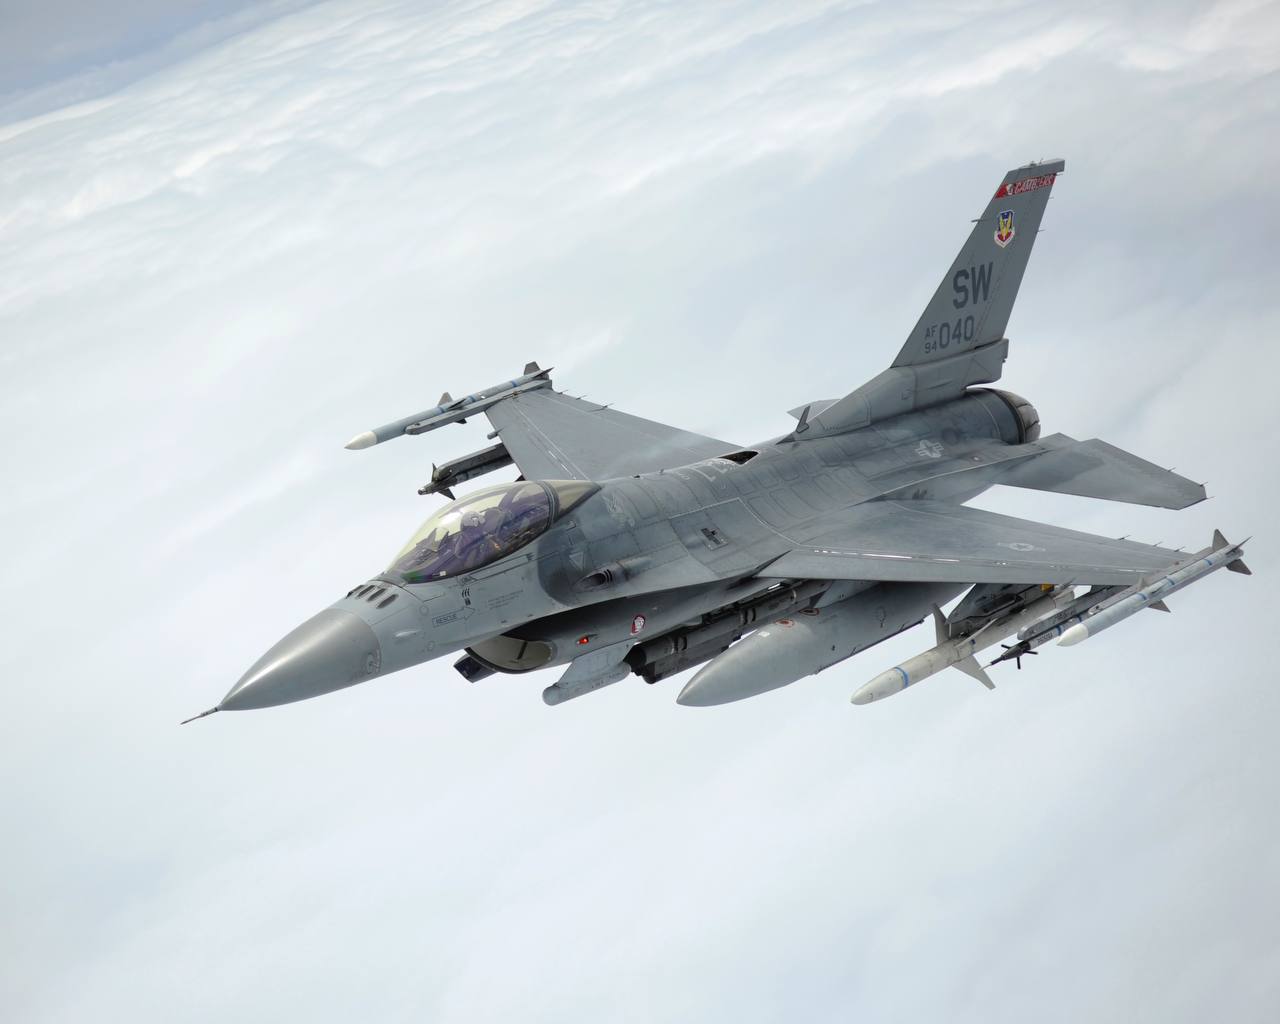 ⚡️Польша готова обучать украинских пилотов на истребителях F-16, — премьер-министр Матеуш Моравецкий